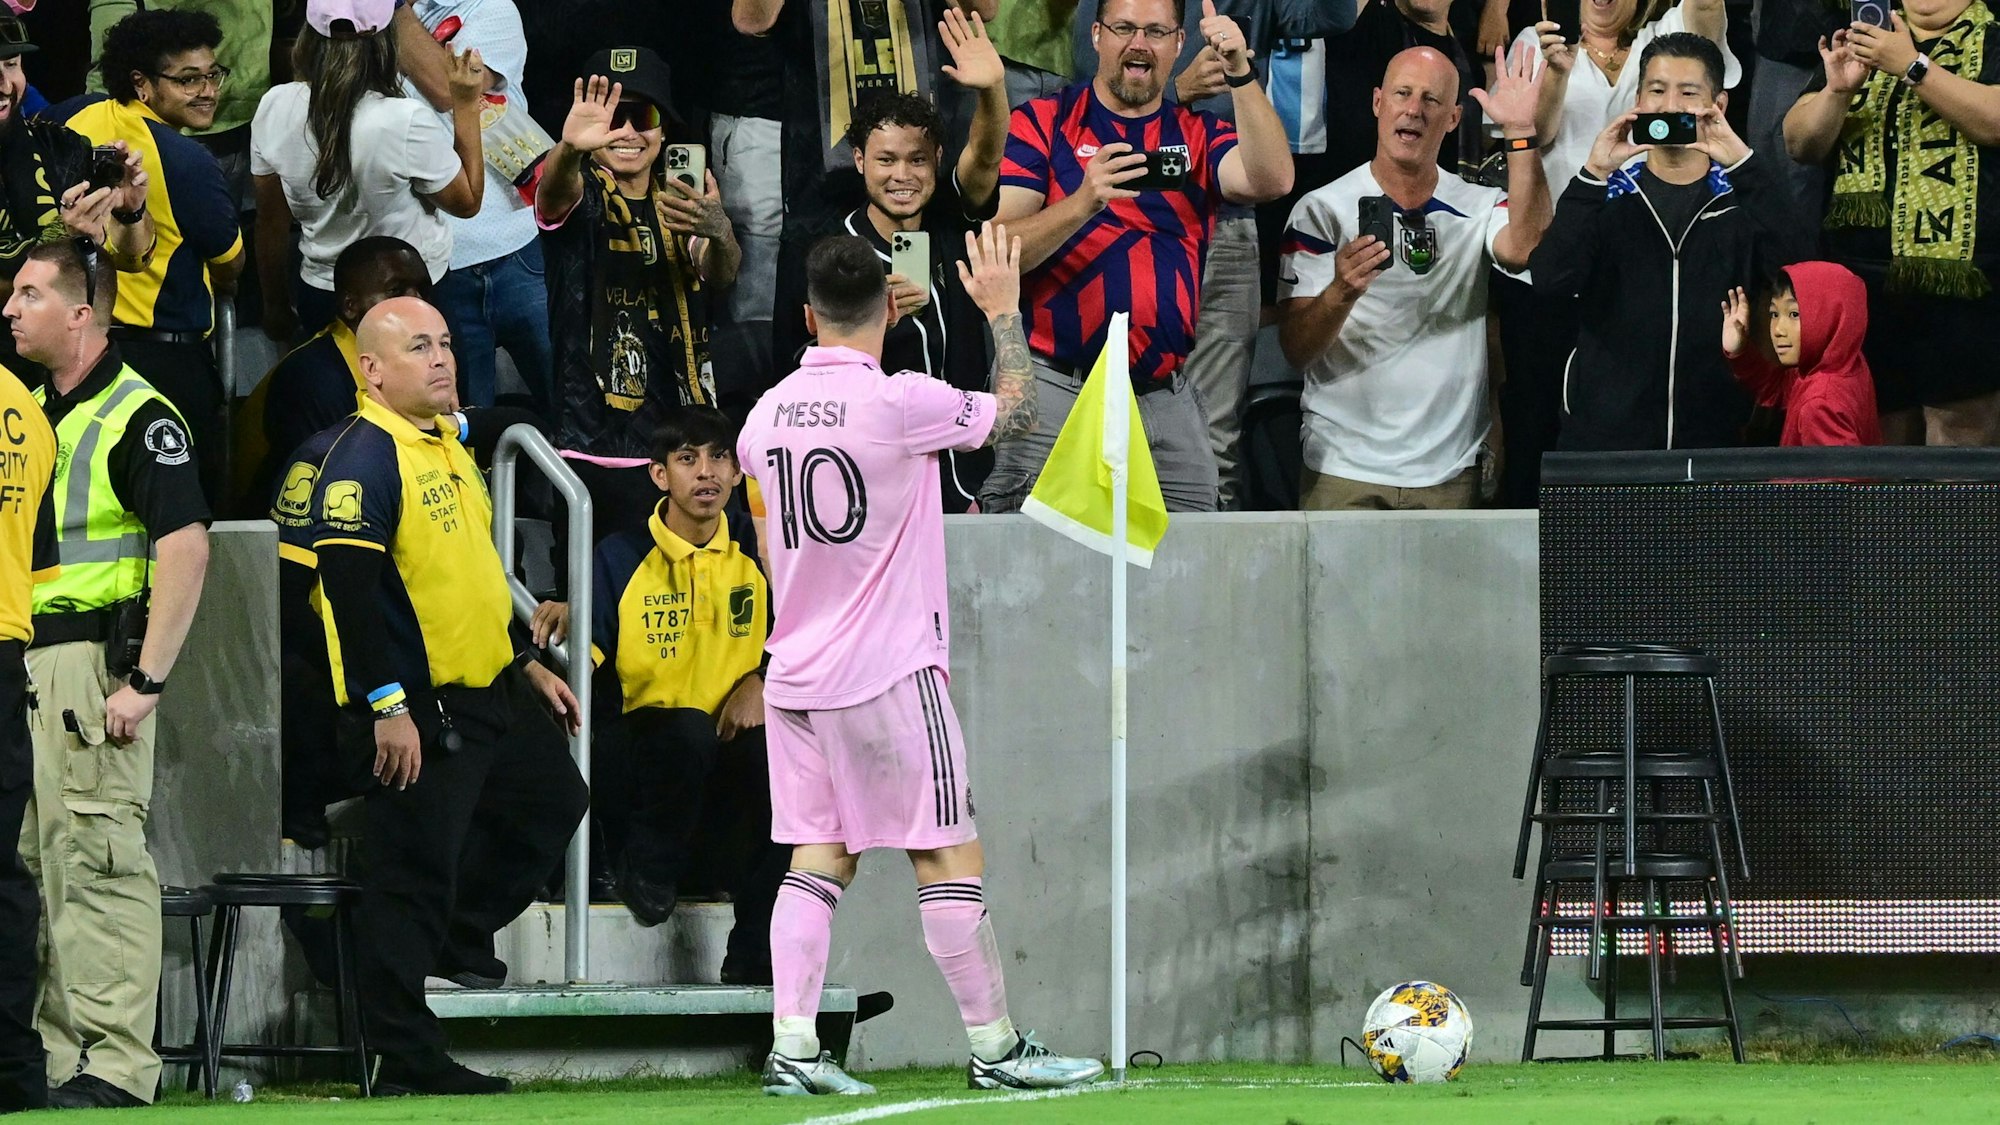 Lionel Messi winkt der jubelnden Masse im Stadion zu.